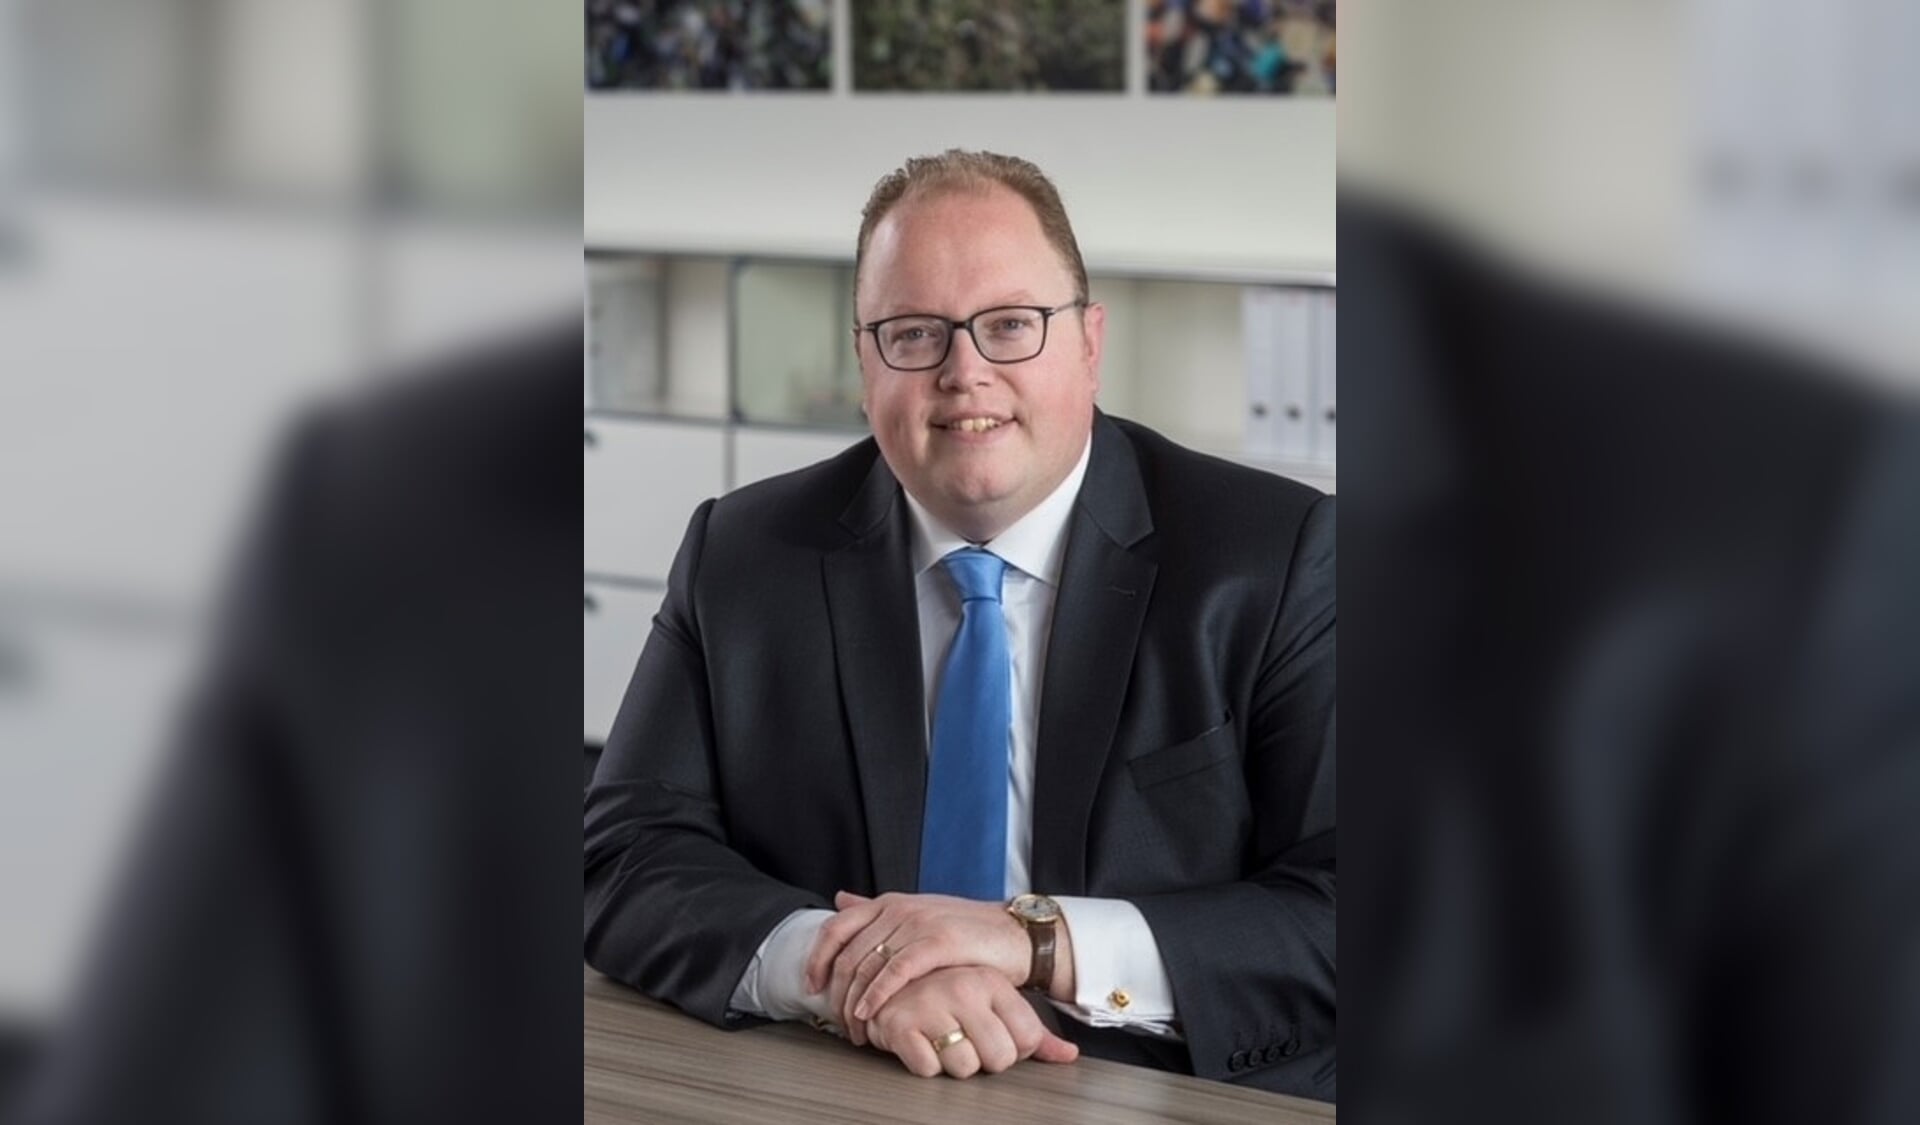 Ben Visser is voorgedragen als nieuwe burgemeester van Eemsdelta. Begin volgend jaar start hij met zijn werkzaamheden.